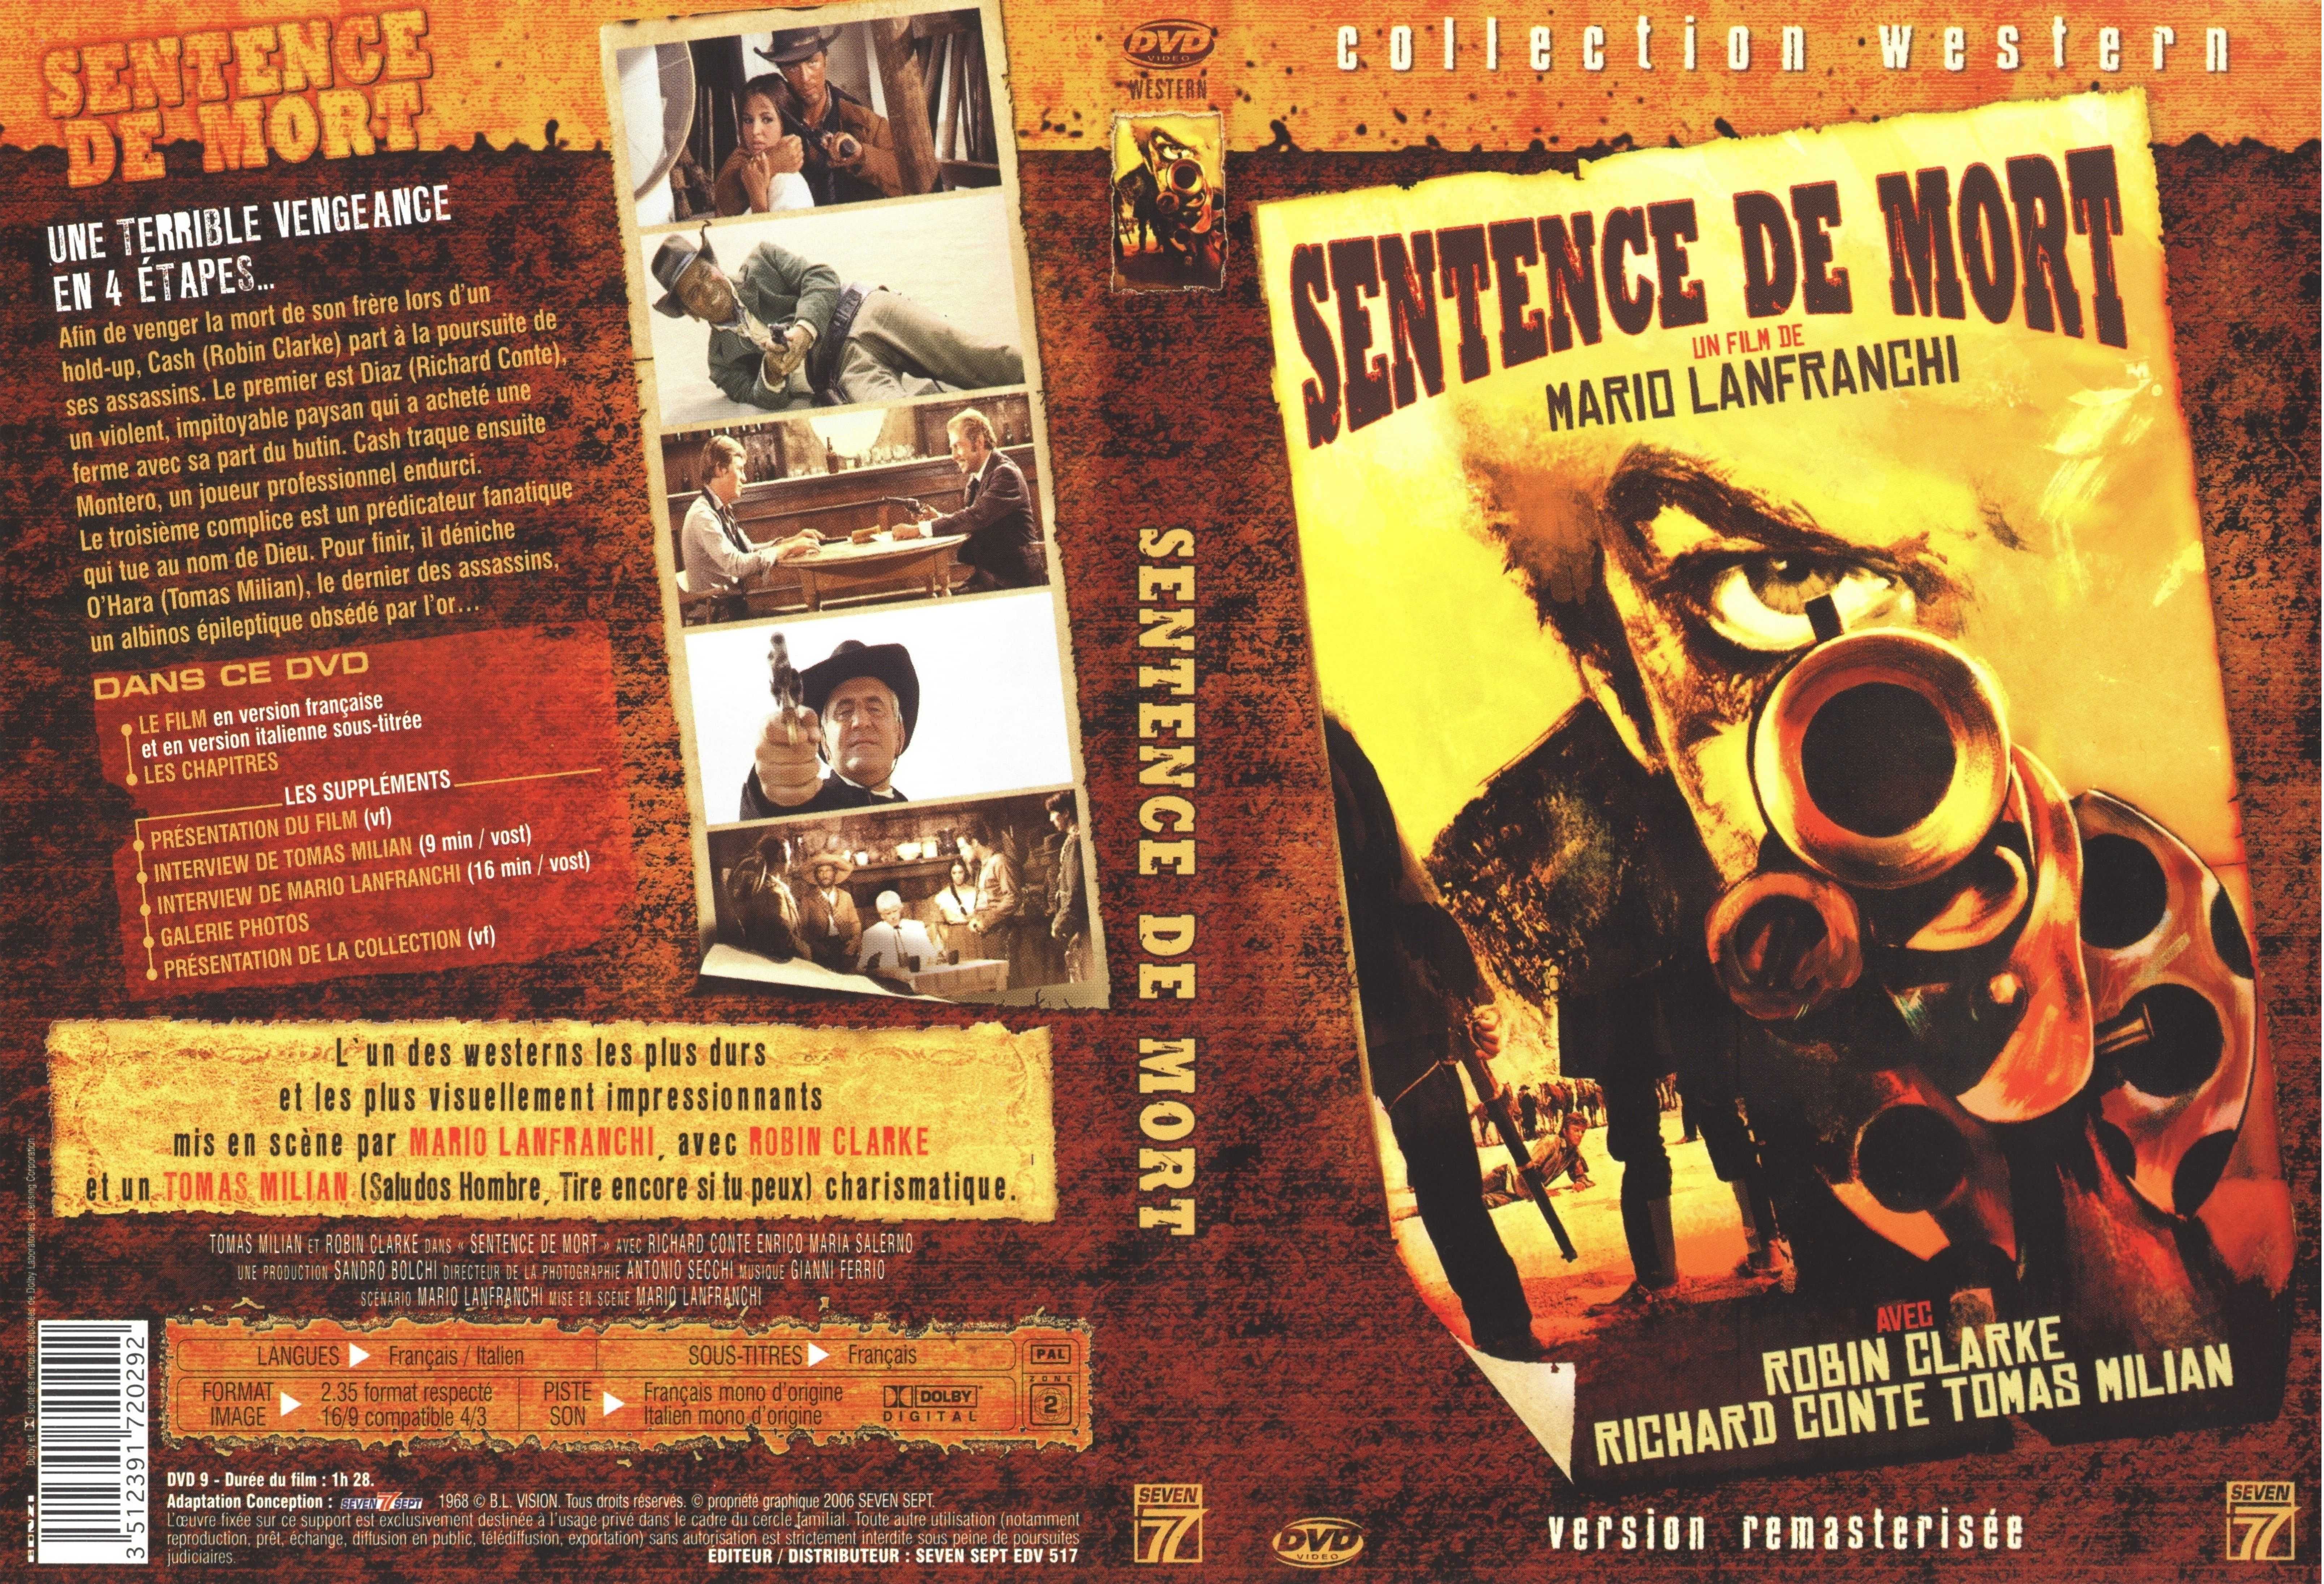 Jaquette DVD Sentence de mort